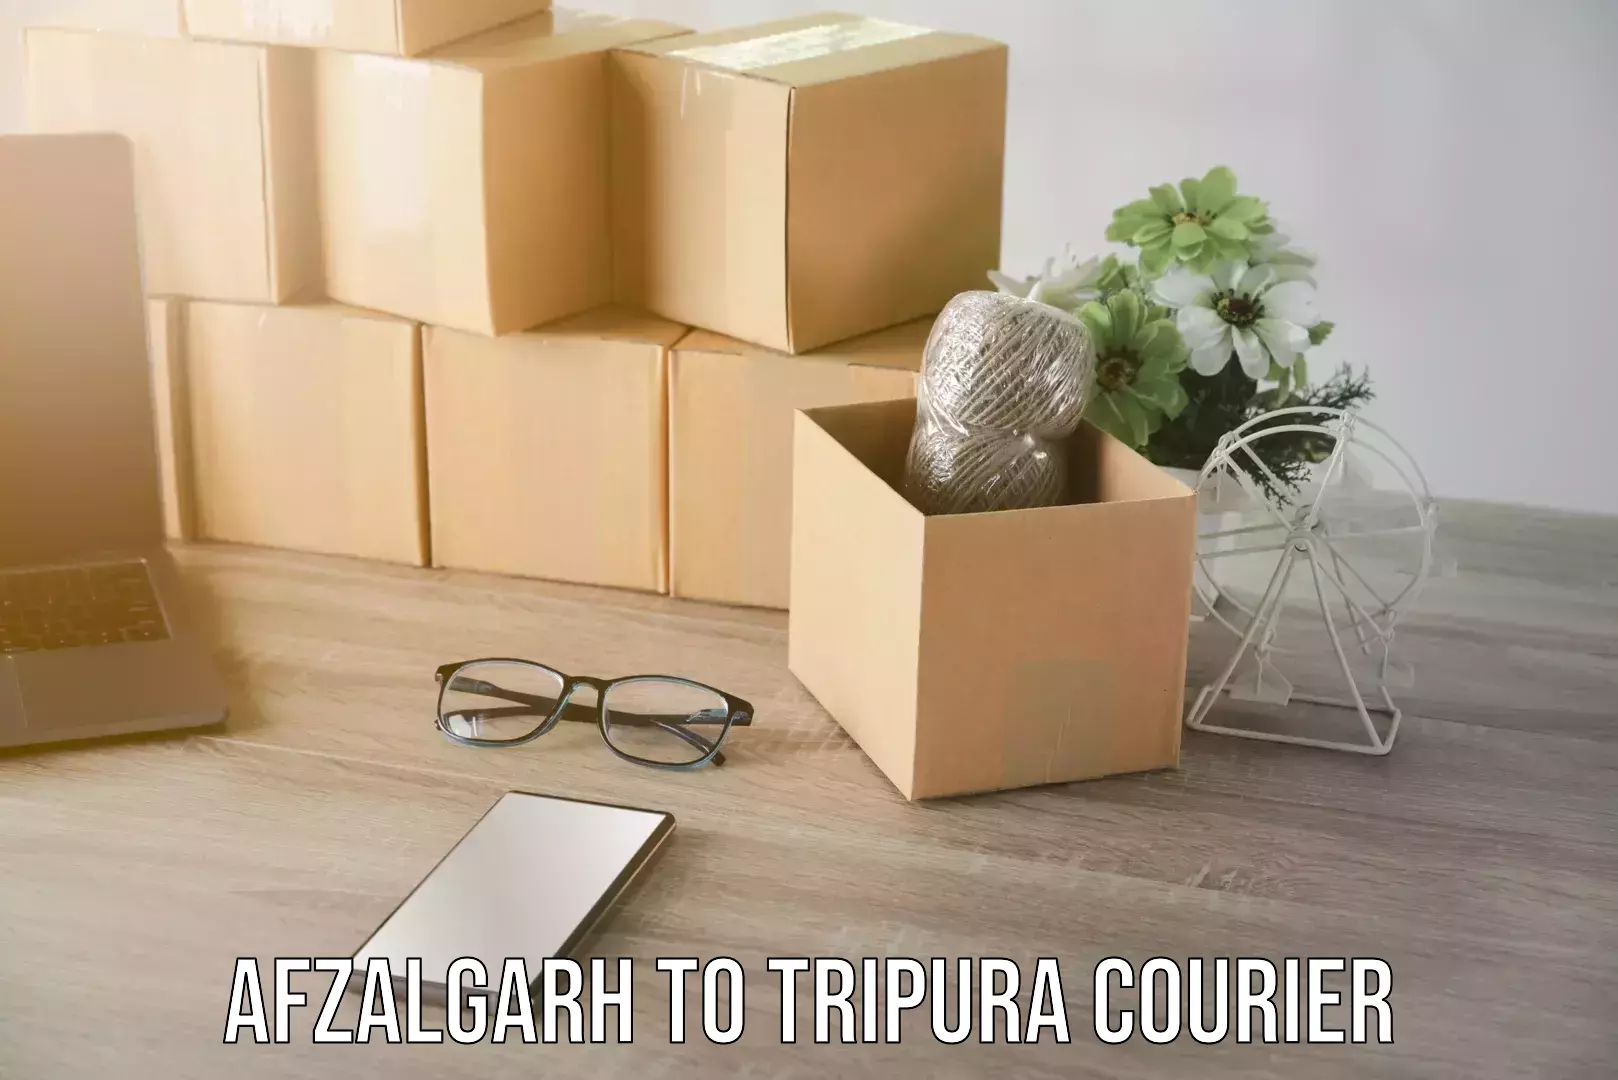 Cargo delivery service Afzalgarh to Tripura